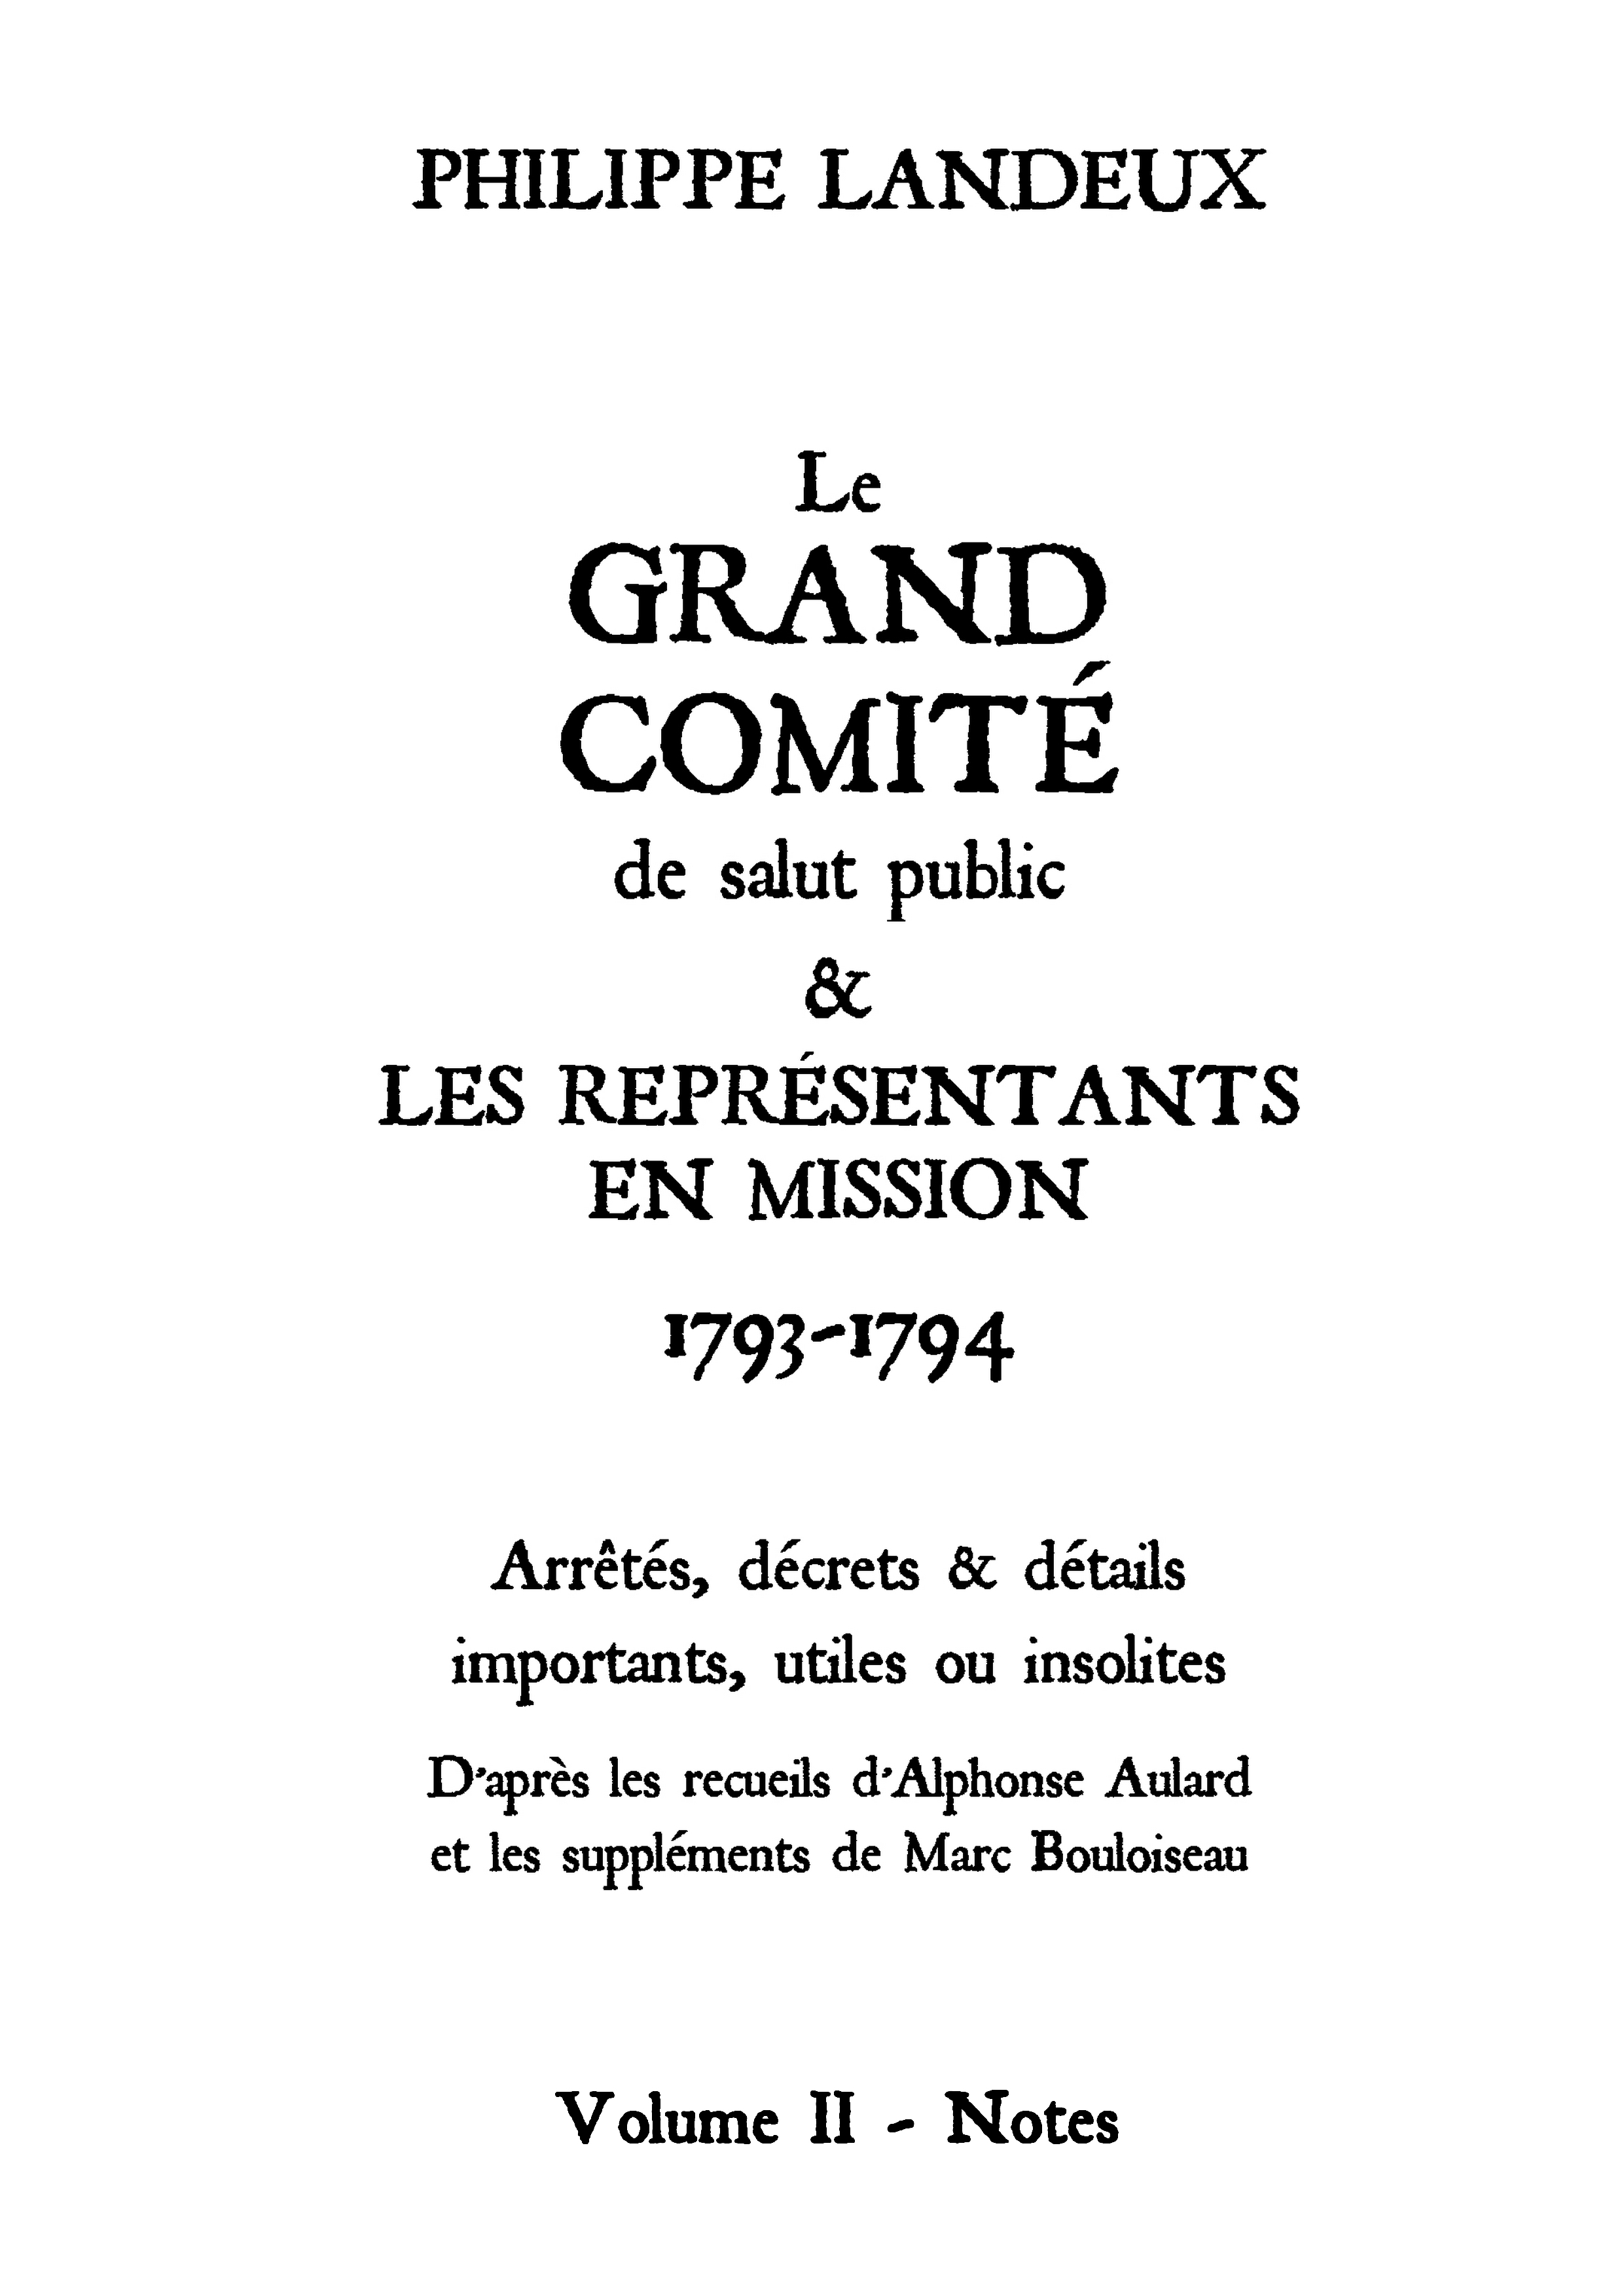 Le Grand comité (Volume II)